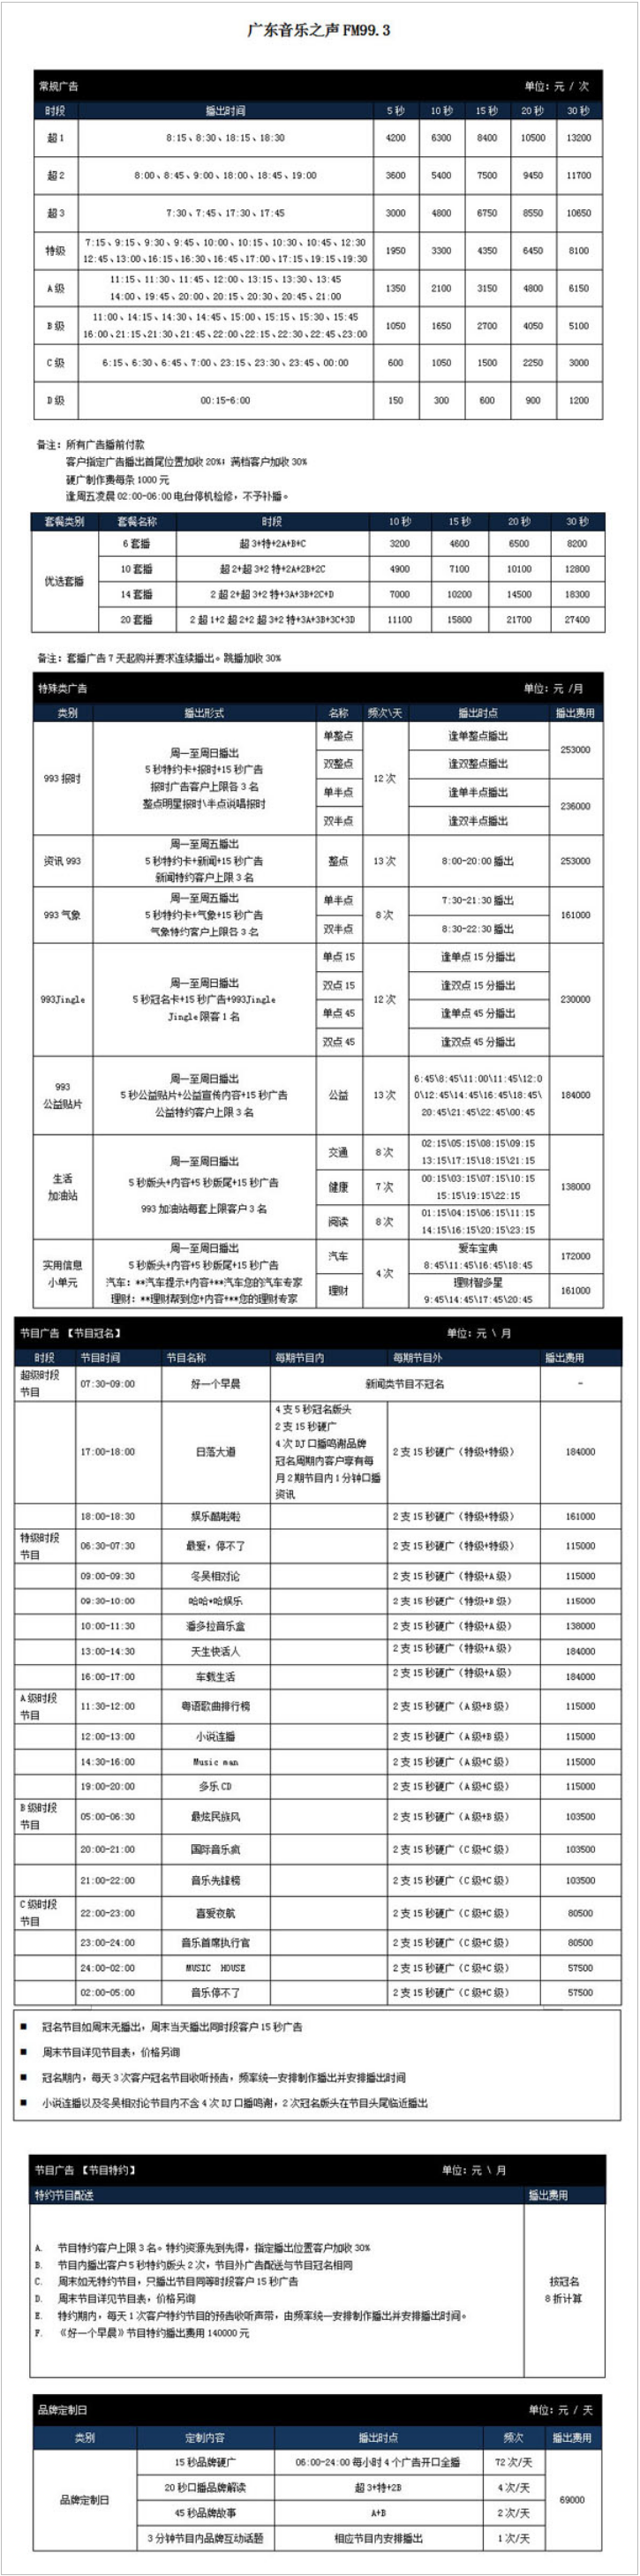 2015广东人民广播电台音乐之声 FM99.3广告报价表.png